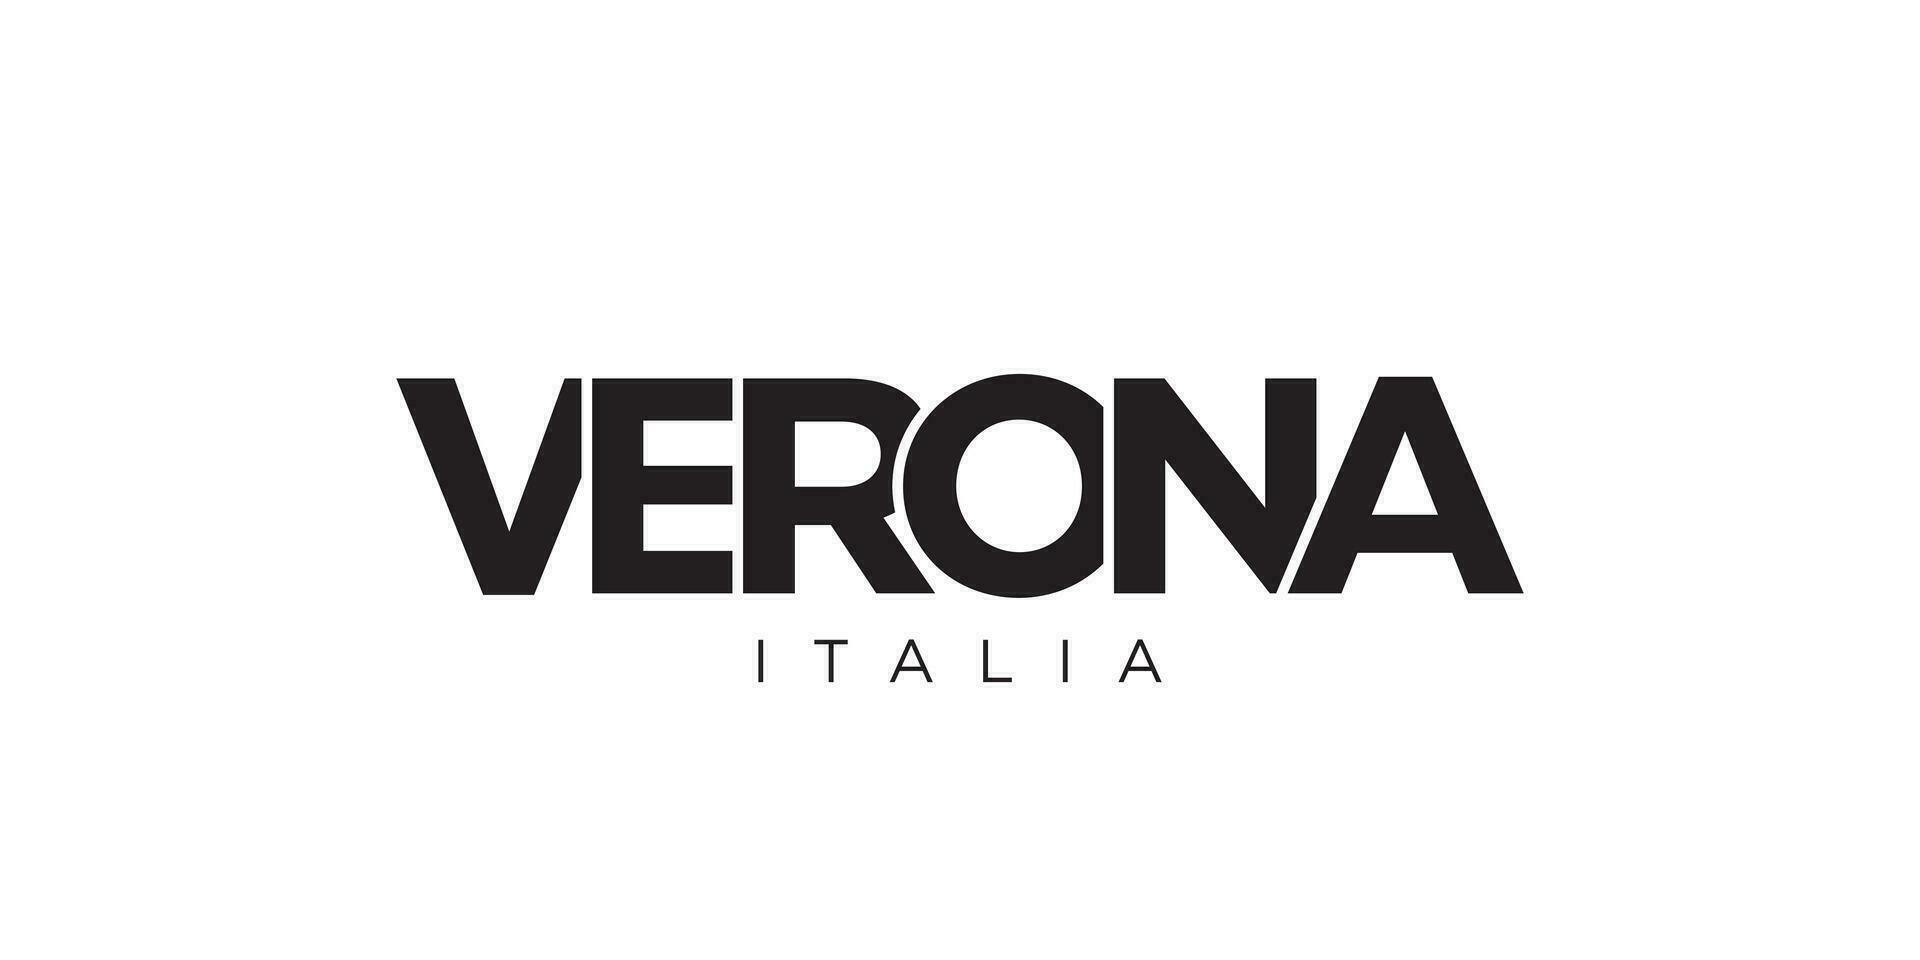 Verona en el italia emblema. el diseño caracteristicas un geométrico estilo, vector ilustración con negrita tipografía en un moderno fuente. el gráfico eslogan letras.